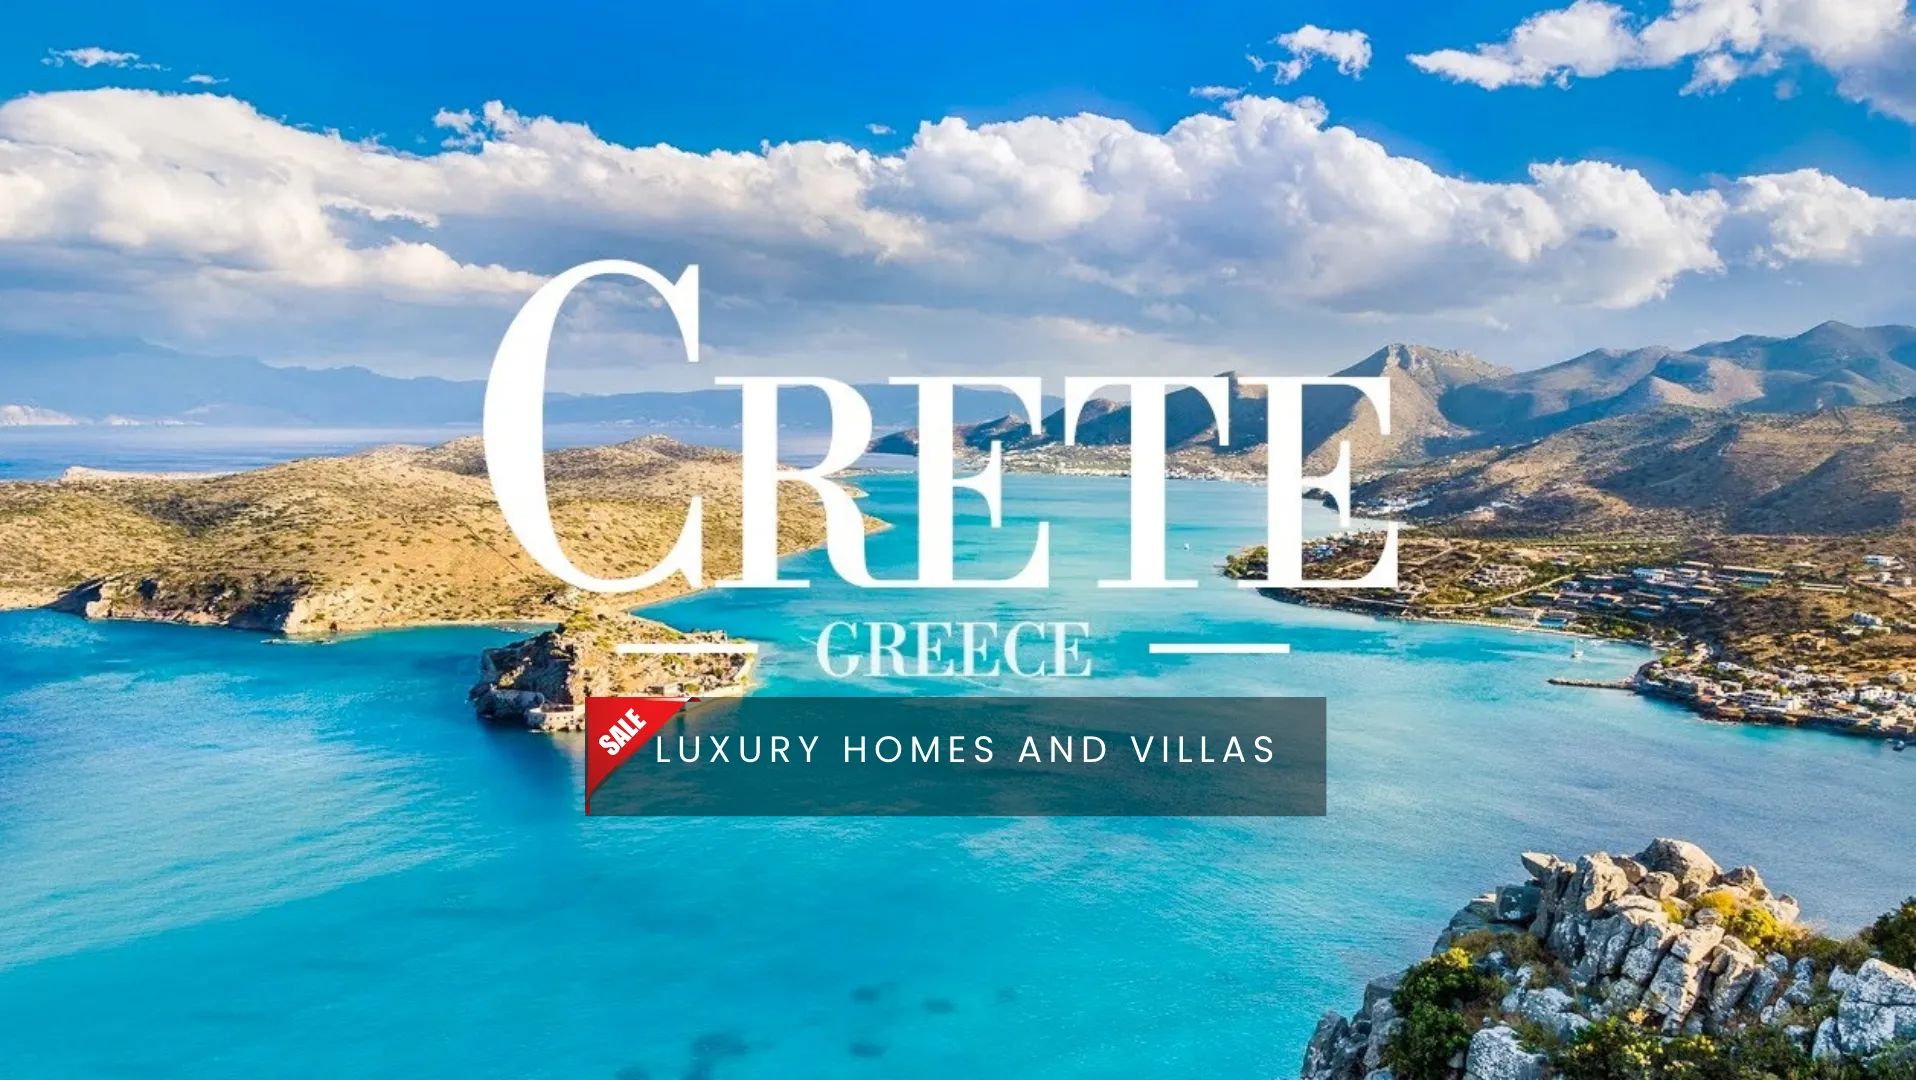 Property for sale in Crete, Crete Real Estate, Houses for sale in Crete